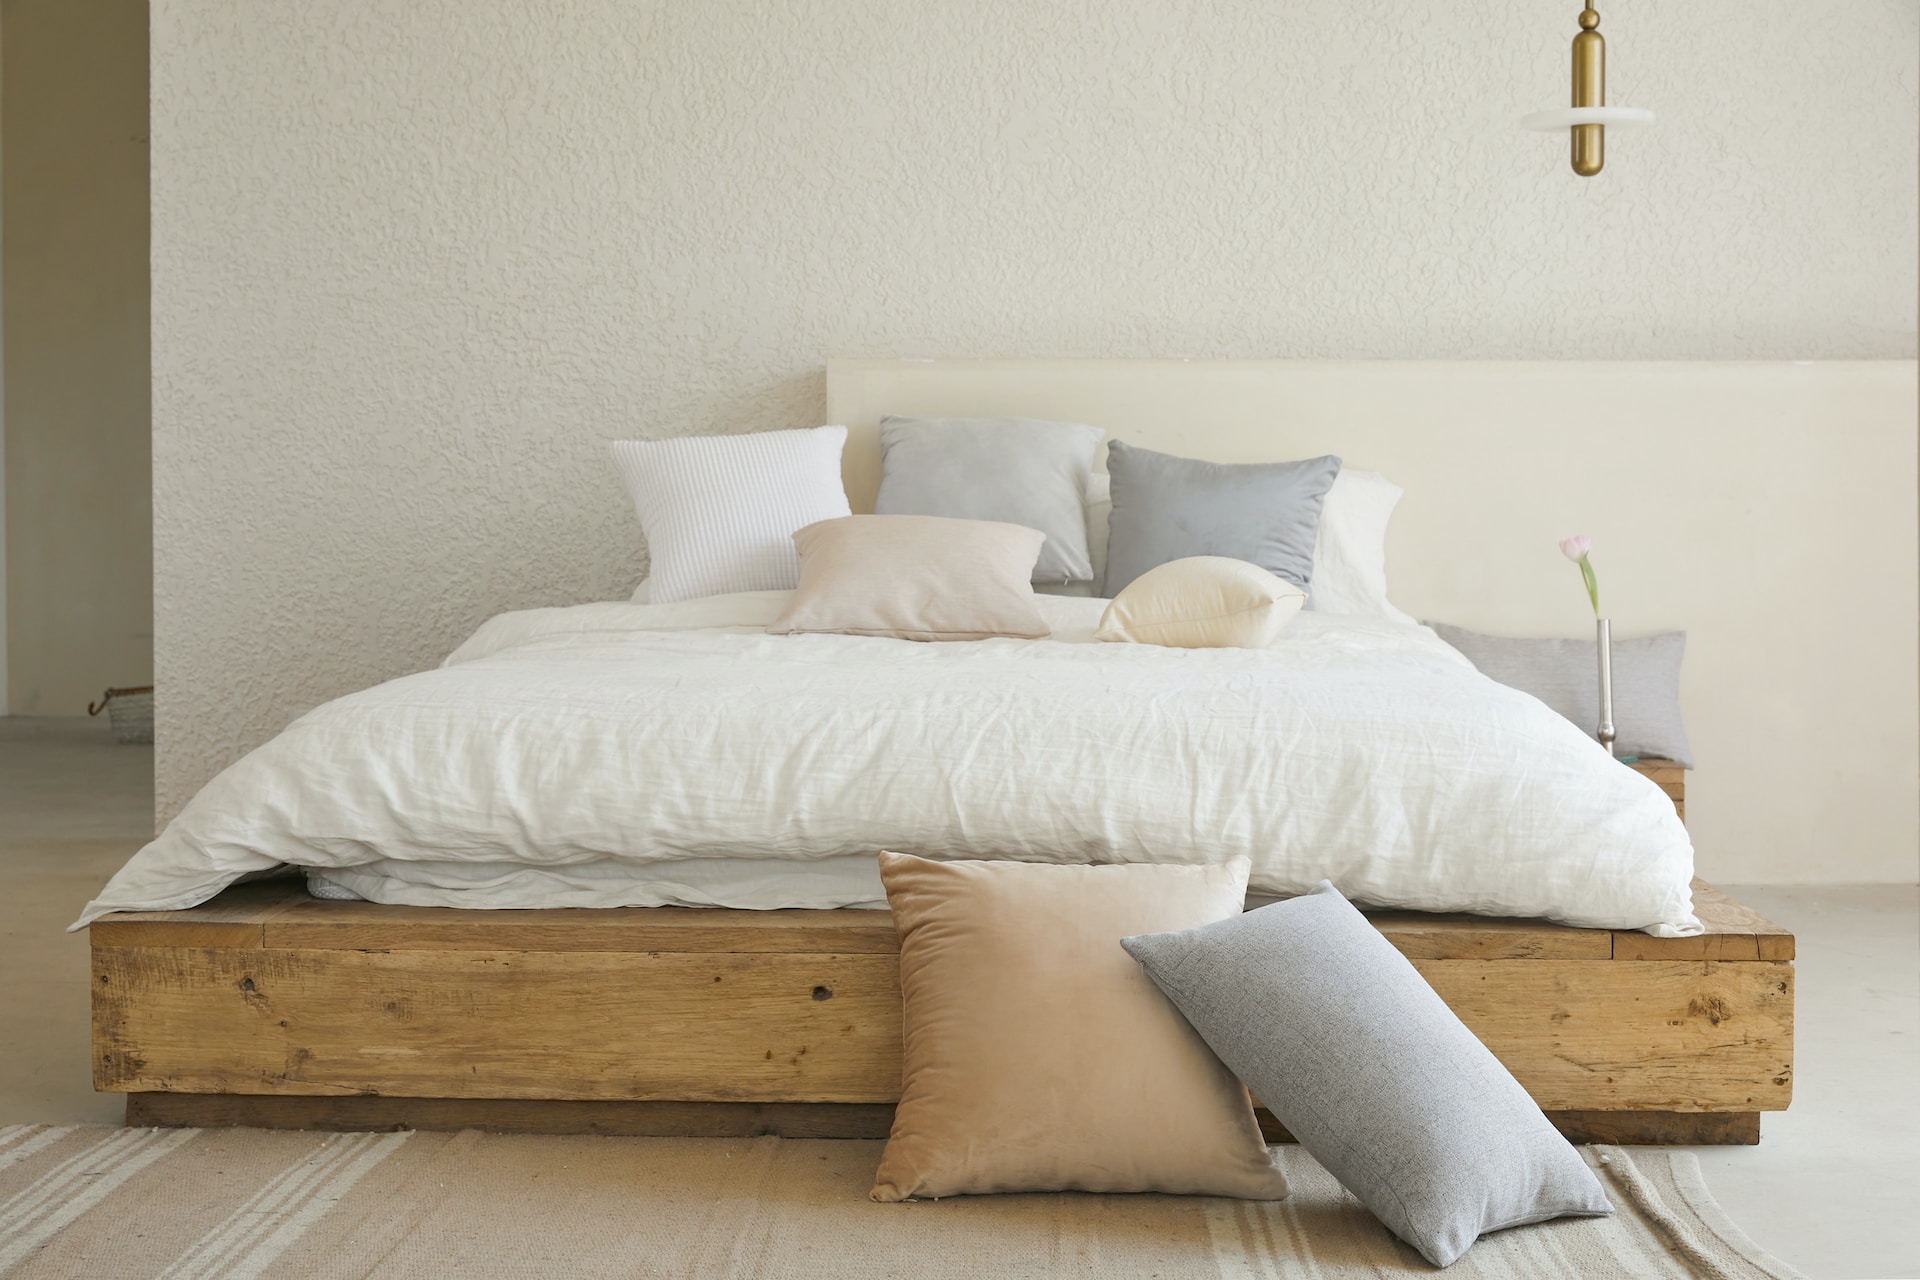 純白色床單是床單色系裡的基本款，不僅好搭配，也讓人聯想到純粹，腦中空白無雜緒也較容易入睡，挑選材質若為珠光白，更帶有柔柔的絲綢感，可以依著視覺與觸覺一起進入夢鄉